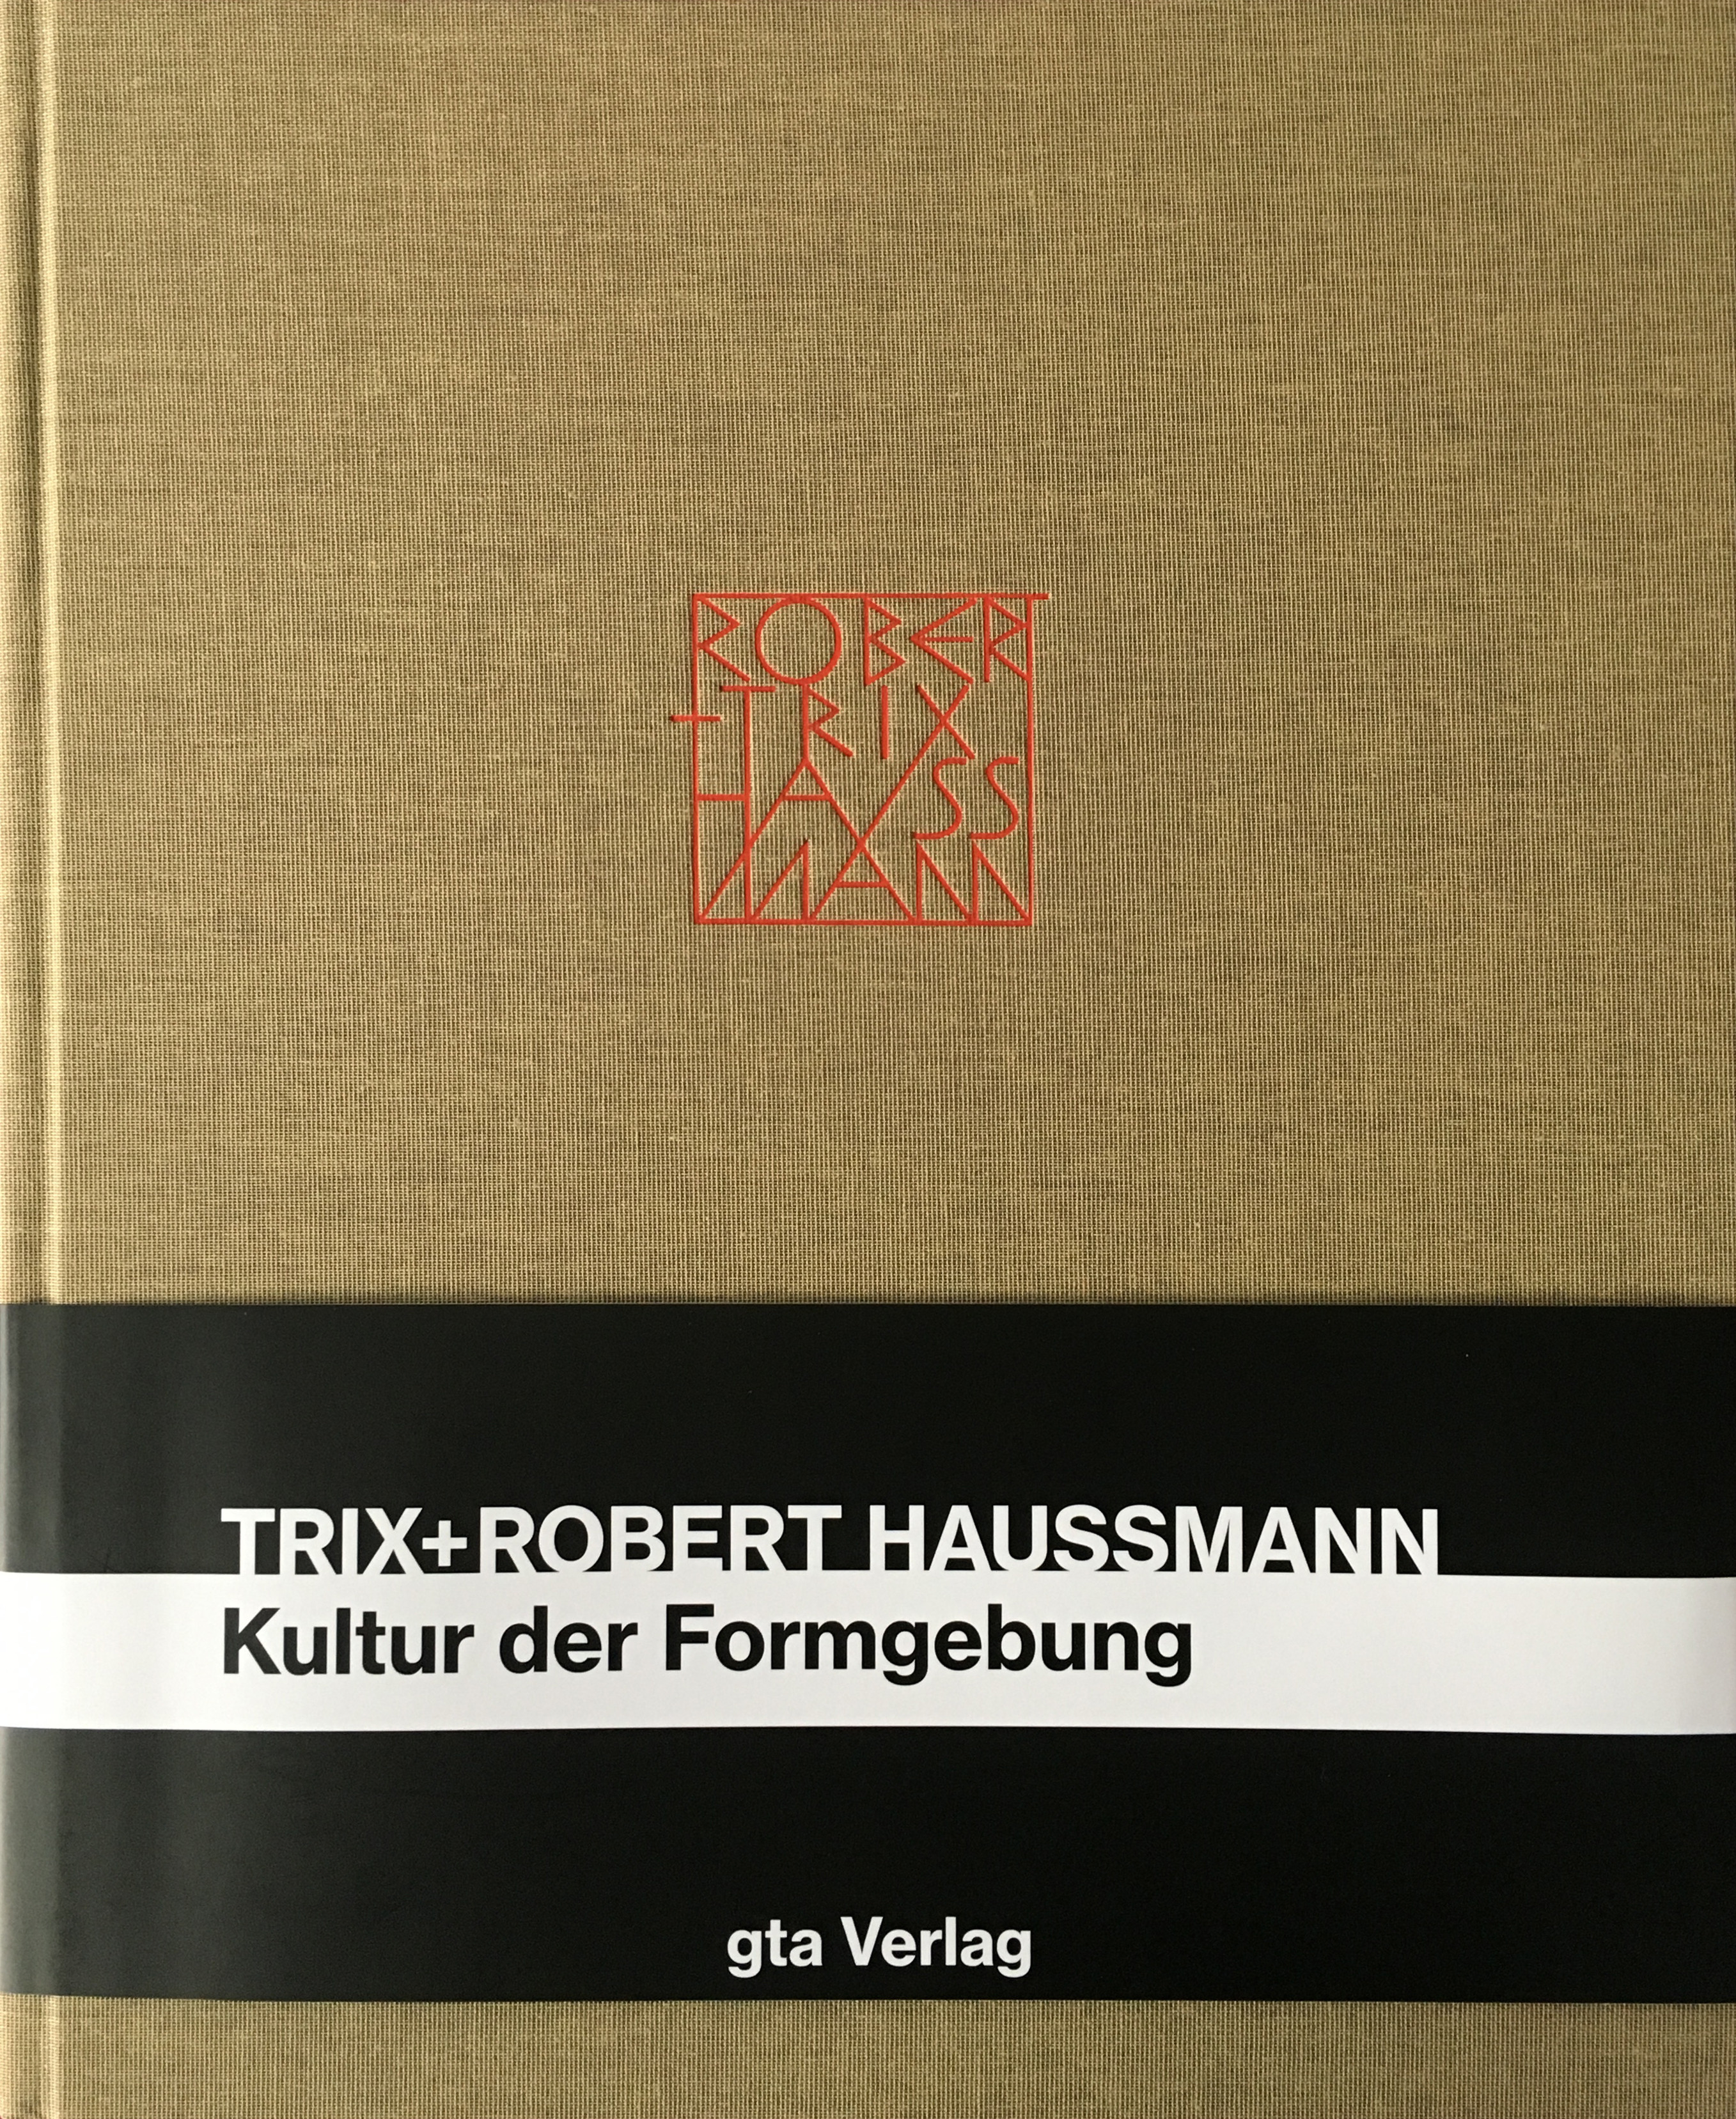 Trix und Robert Haussmann Juri Steiner - Bild 1 von 1